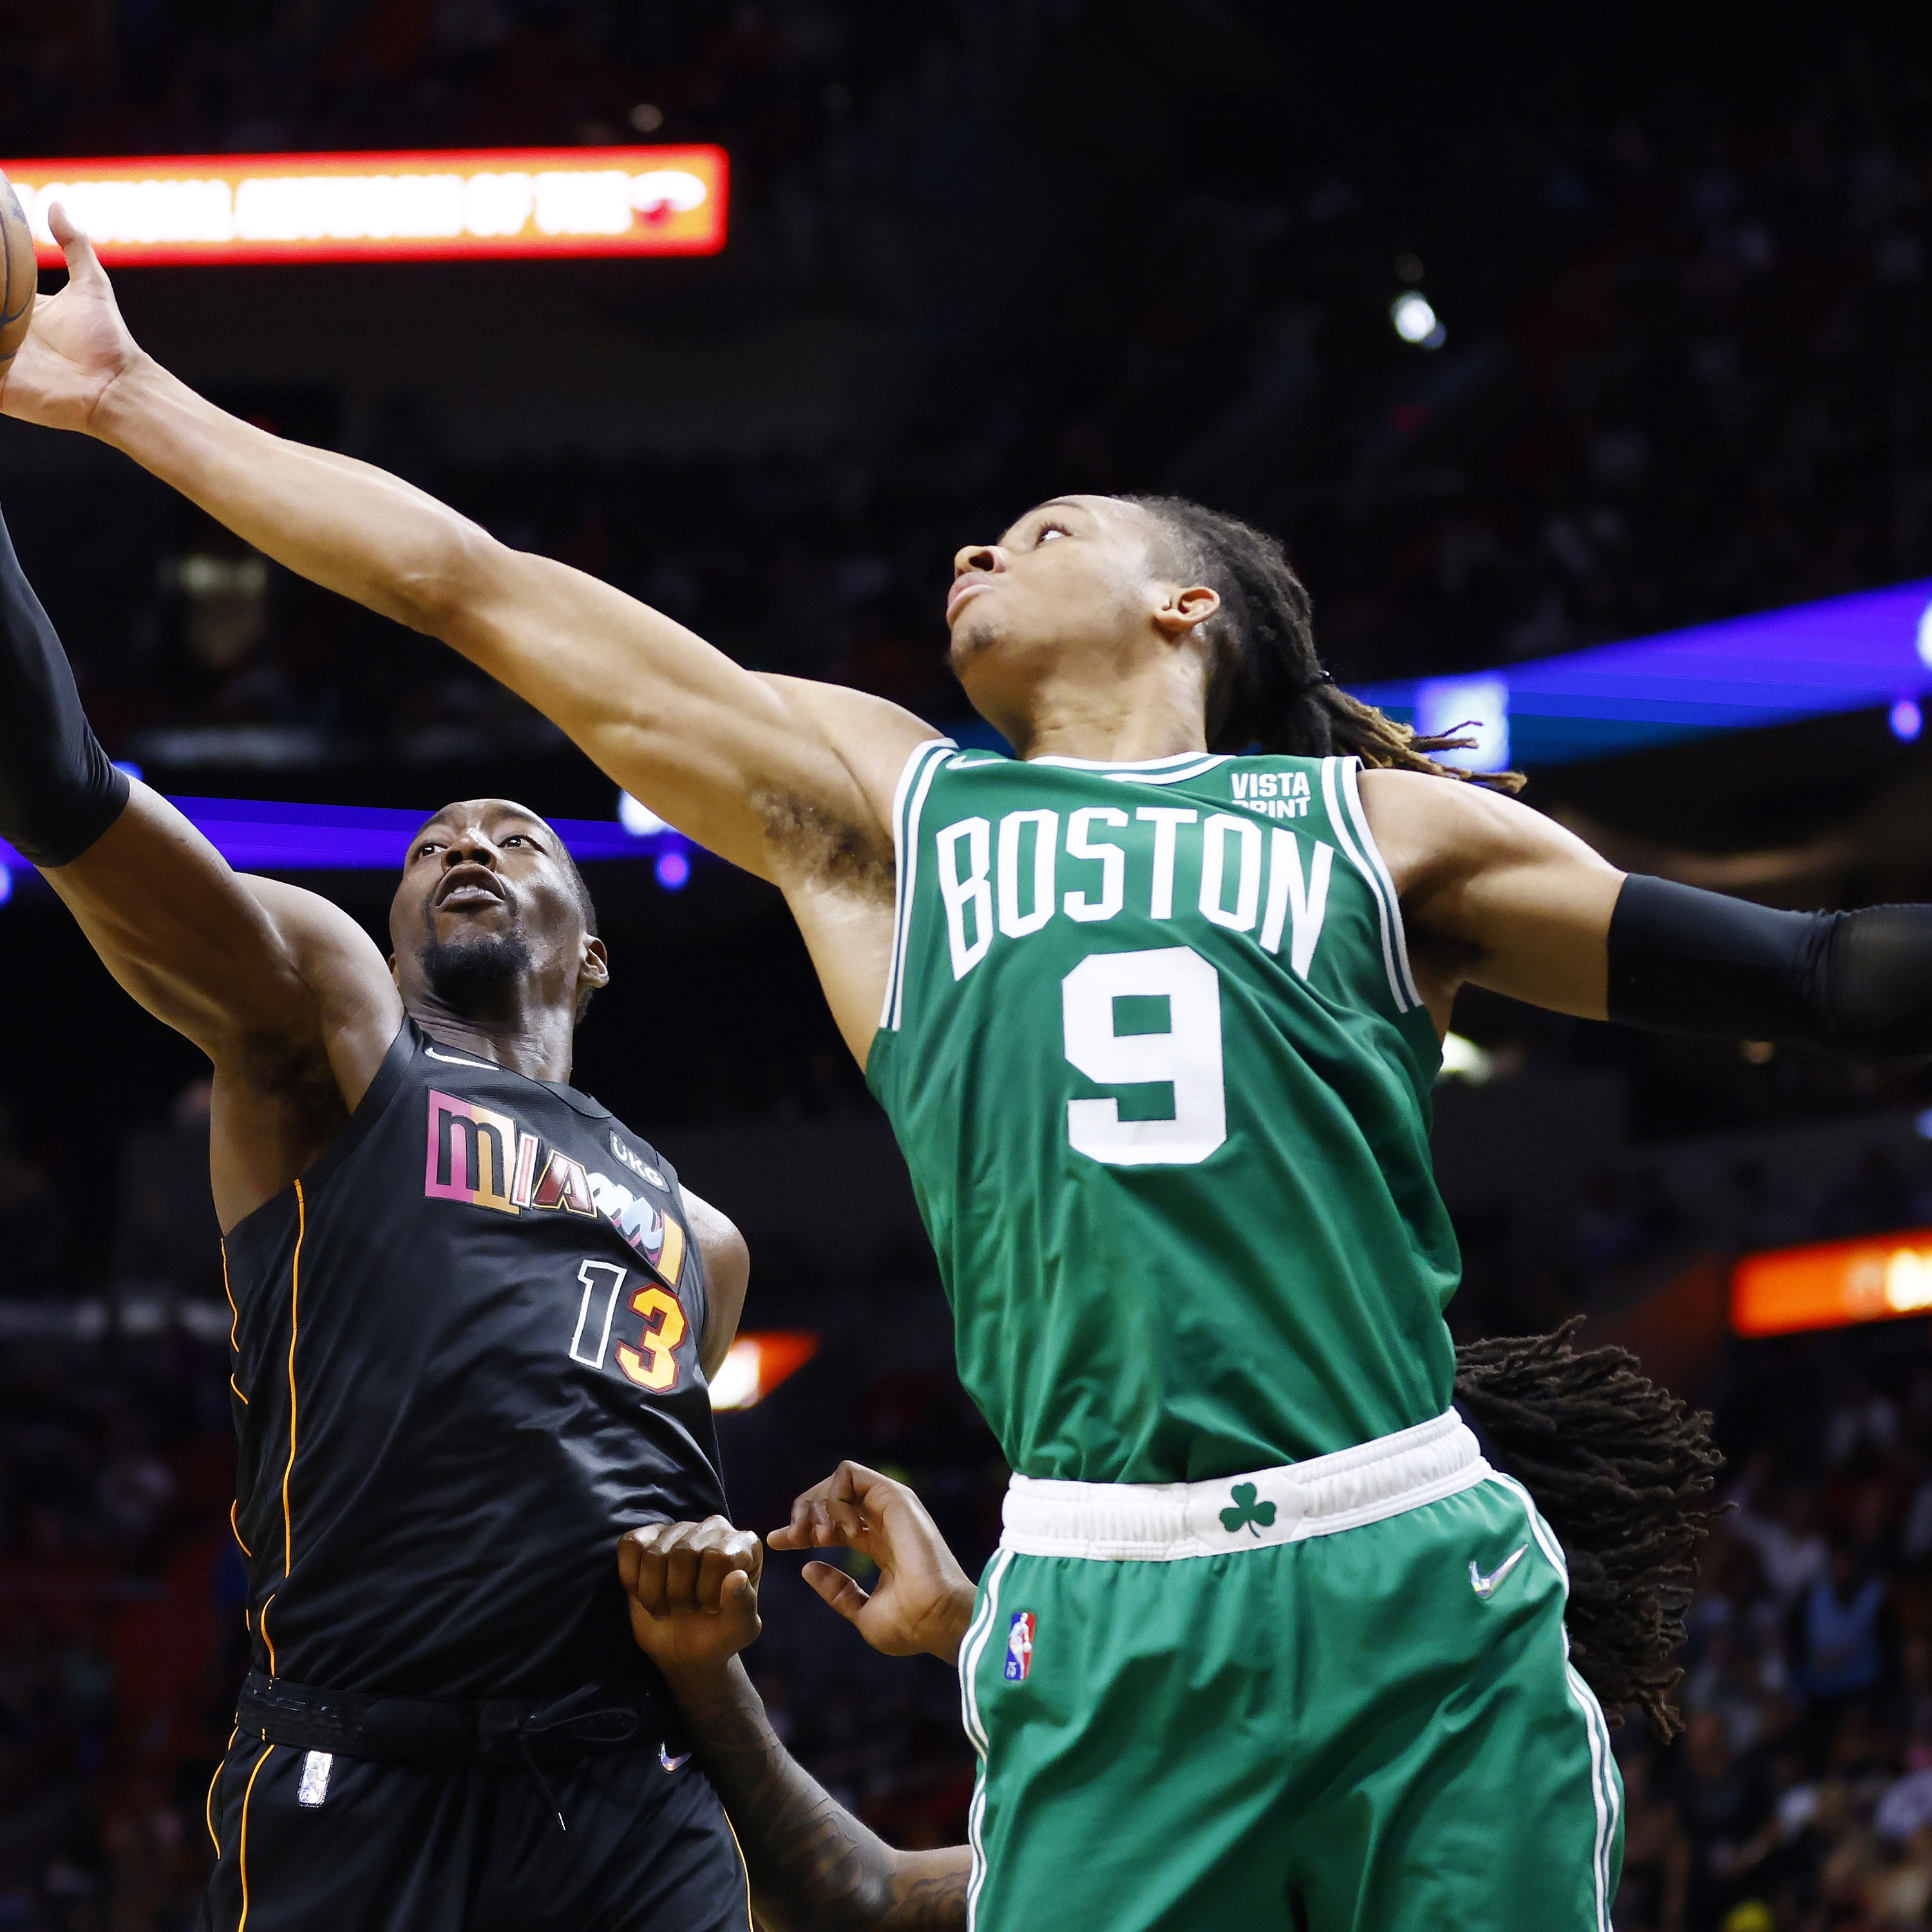 Ponte Aérea #195 - O que esperar de Celtics e Heat nessa temporada?